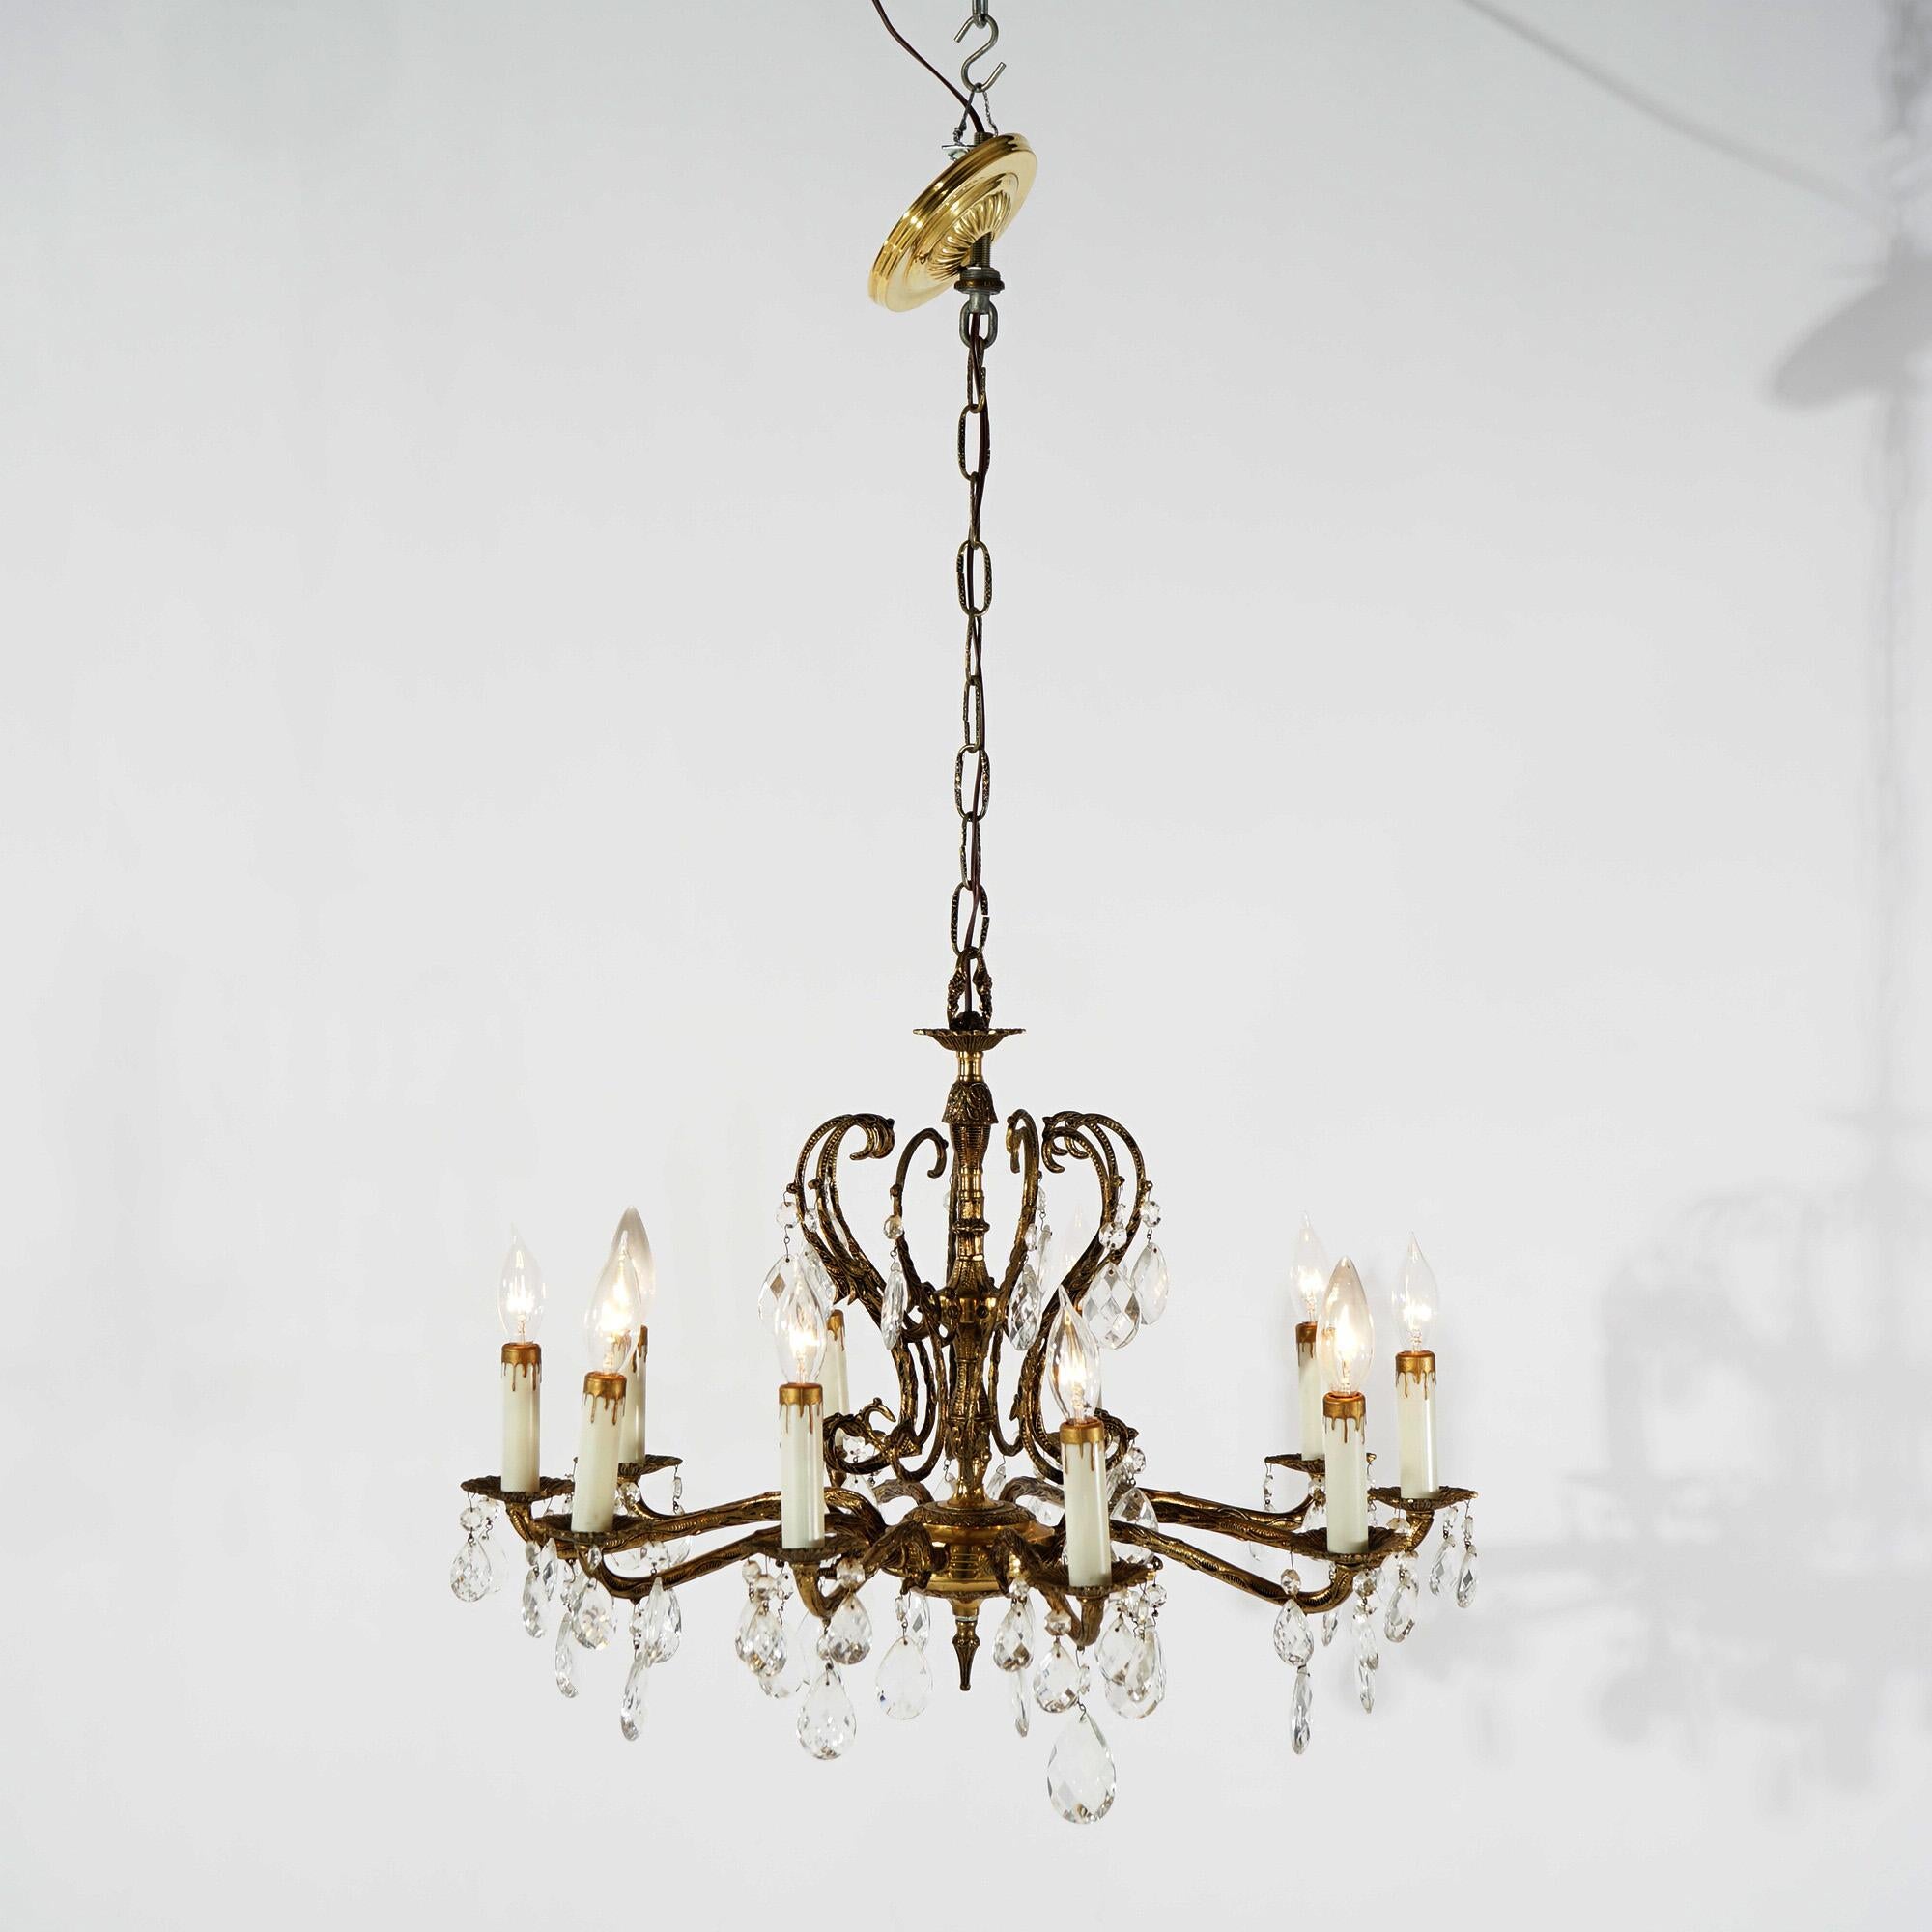 Ein Kronleuchter im französischen Stil mit bronziertem Metallrahmen und spiralförmigen Armen, die in zehn Kerzenlichtern enden, mit hängenden Kristallen, um 1940

Maße - 36 